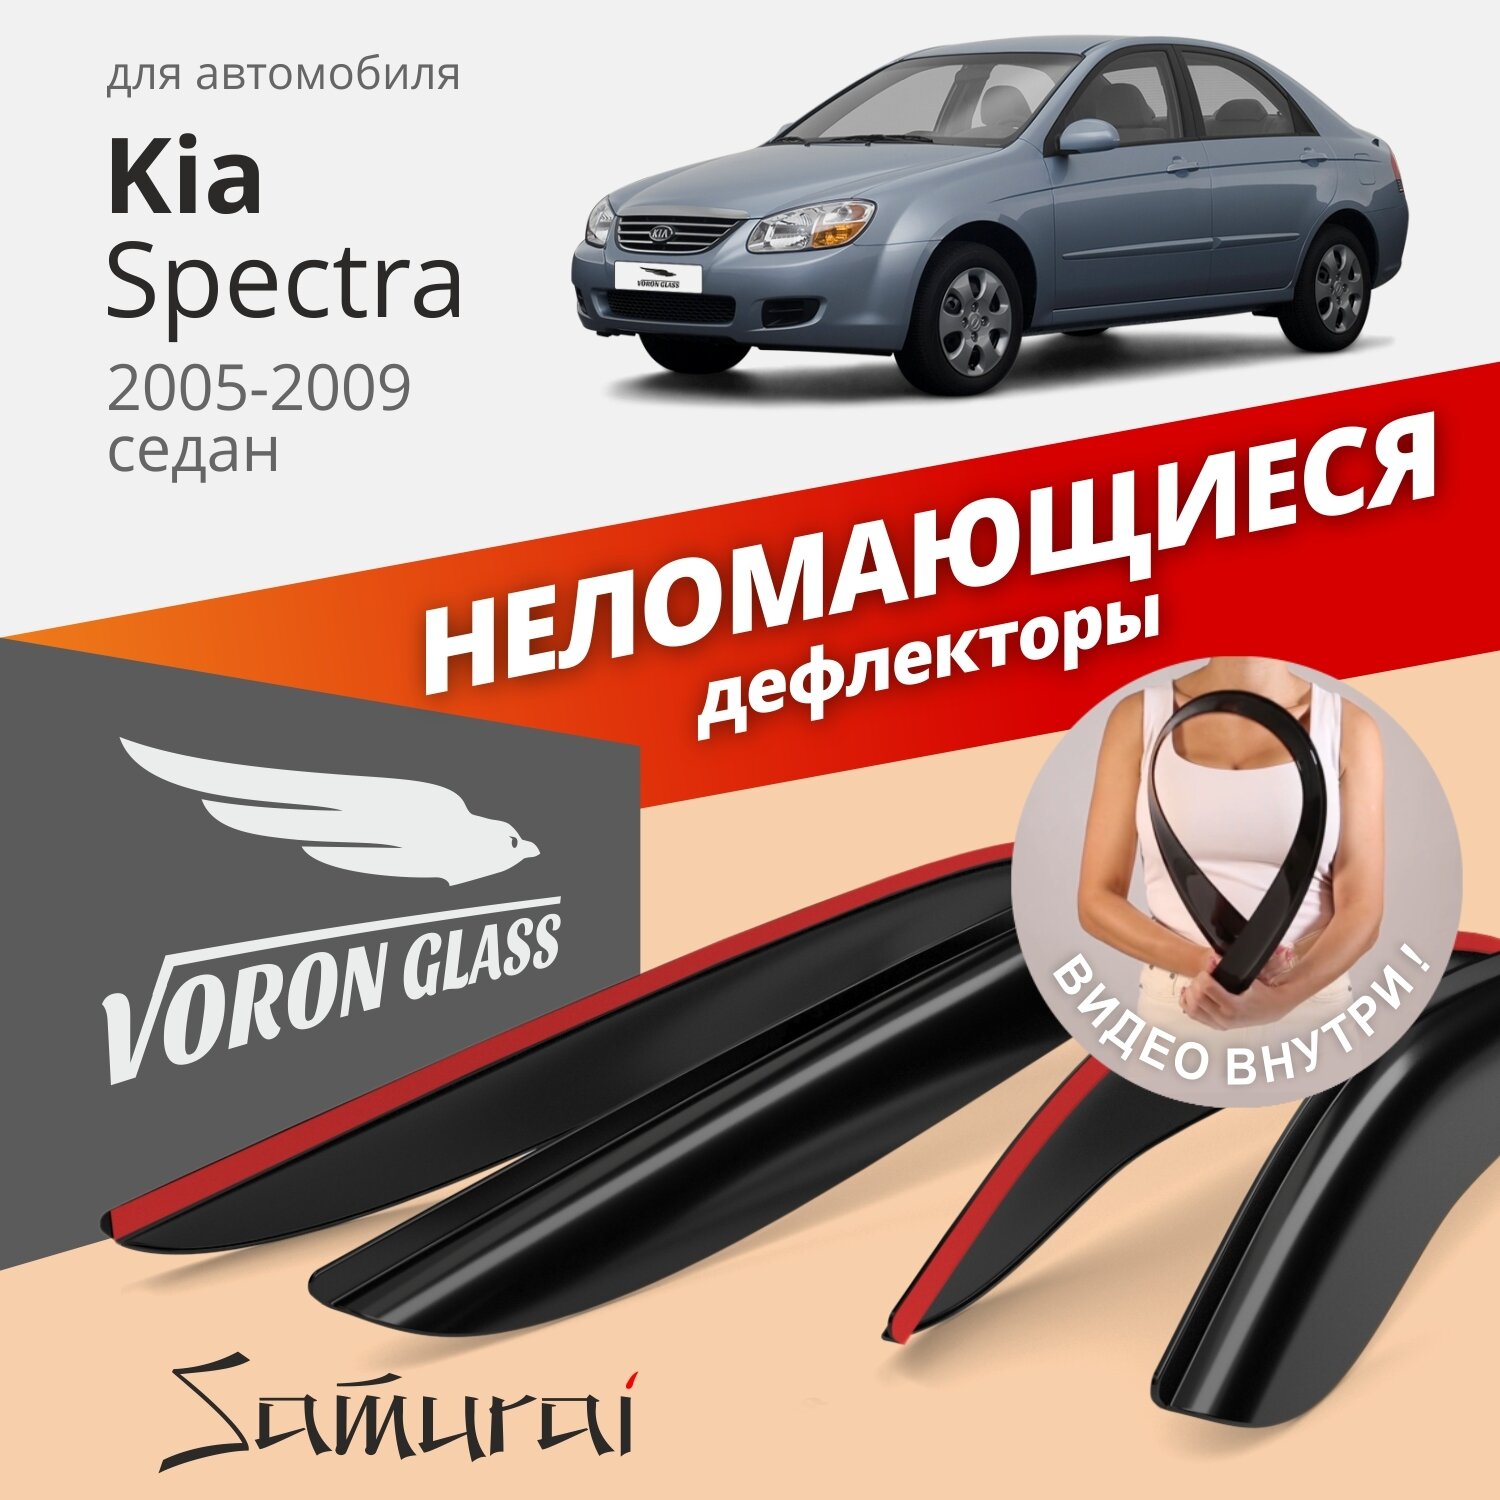 Дефлекторы окон неломающиеся Voron Glass серия Samurai для Kia Spectra 2005-2009 накладные 4 шт.